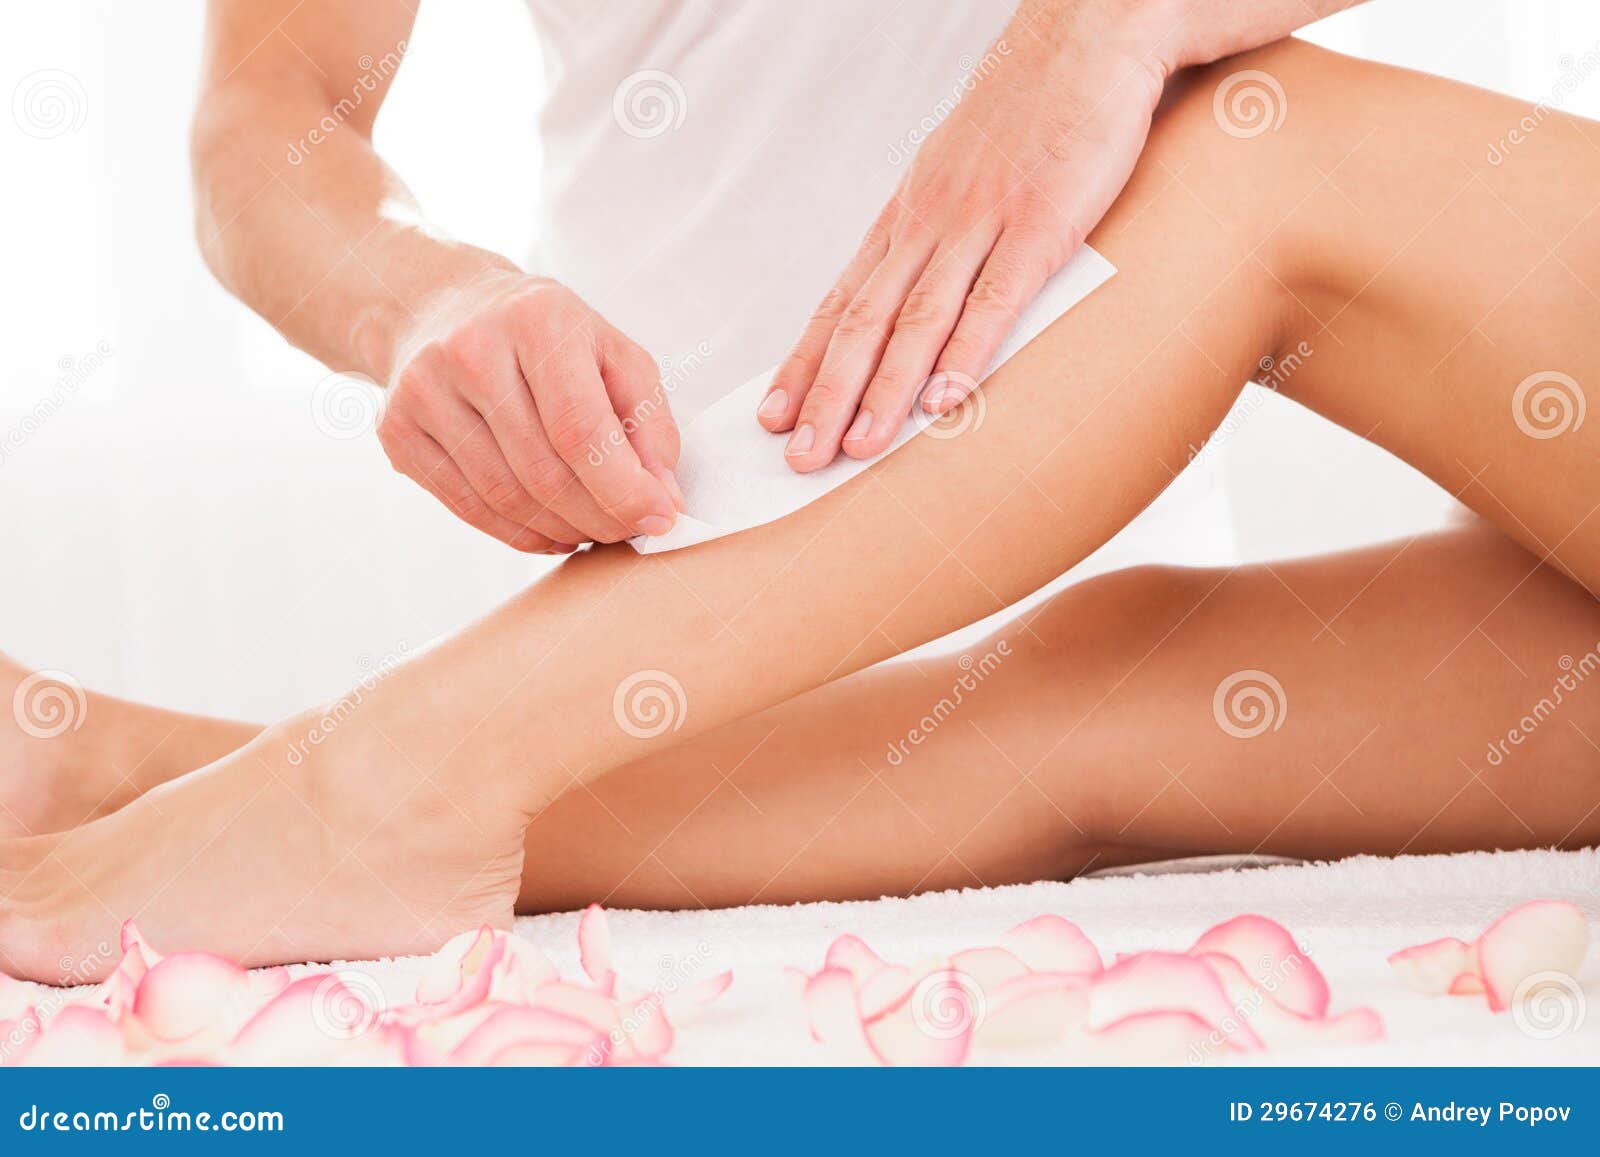 beautician waxing a woman leg